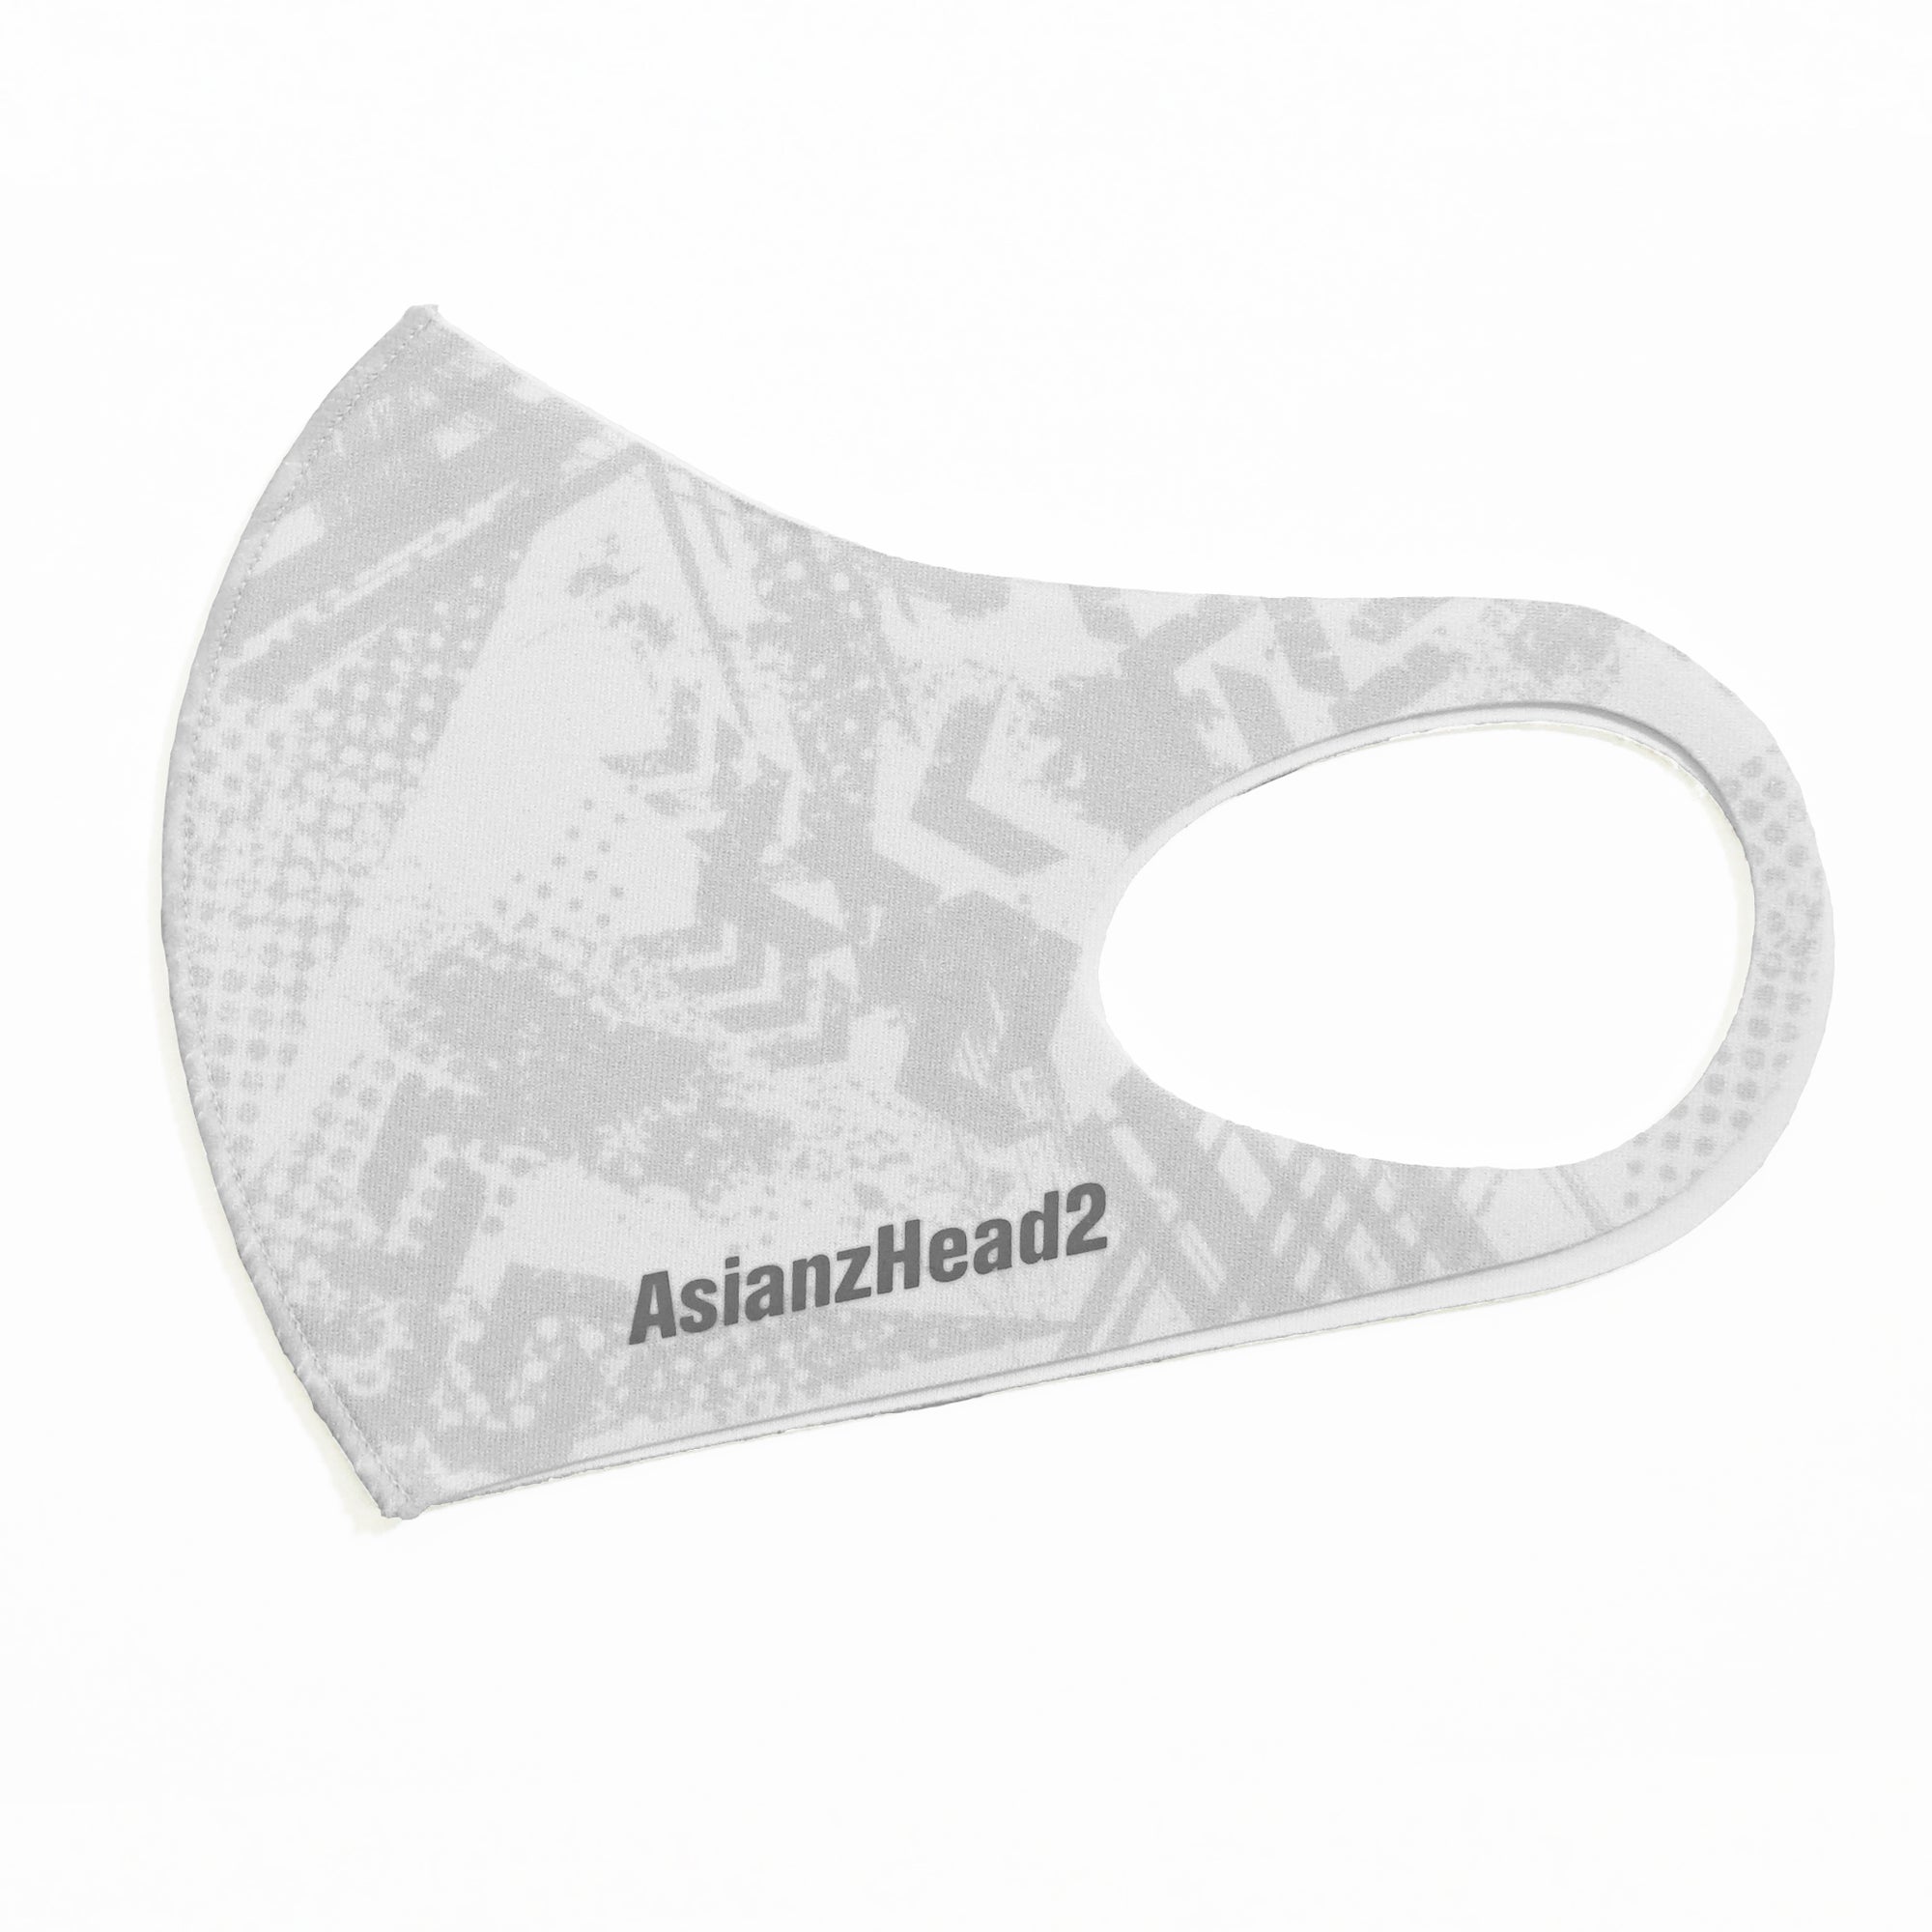 ミネラル マスク ASIANZ HEAD2 ロゴ 総柄グレー (20065212)